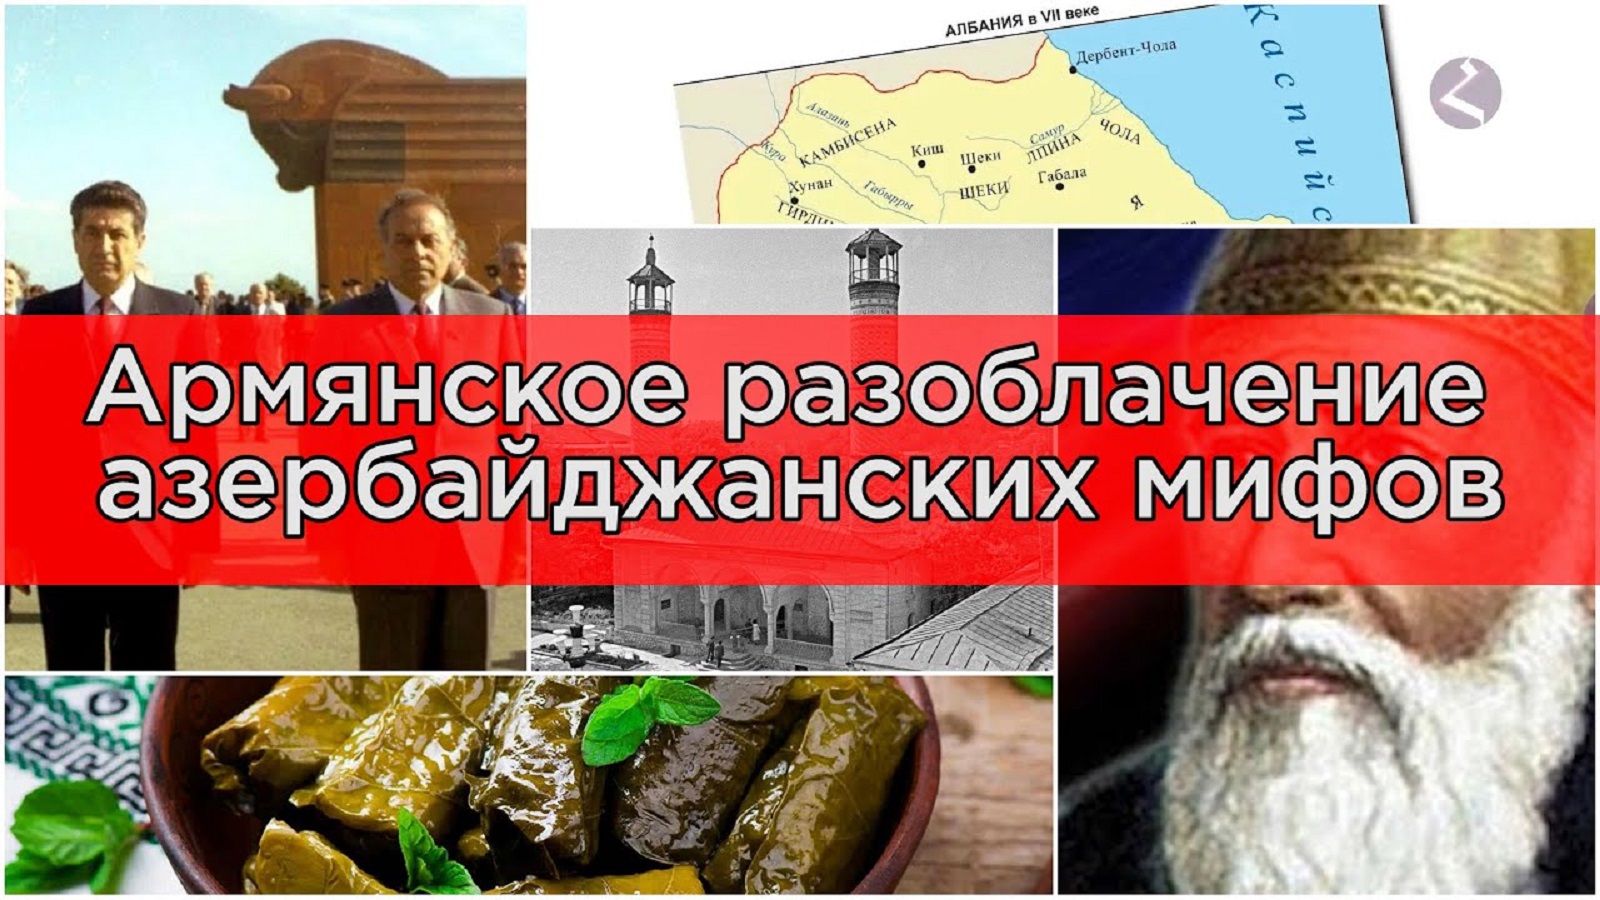 Азербайджанские мифы и их полное разоблачение/HAYK media